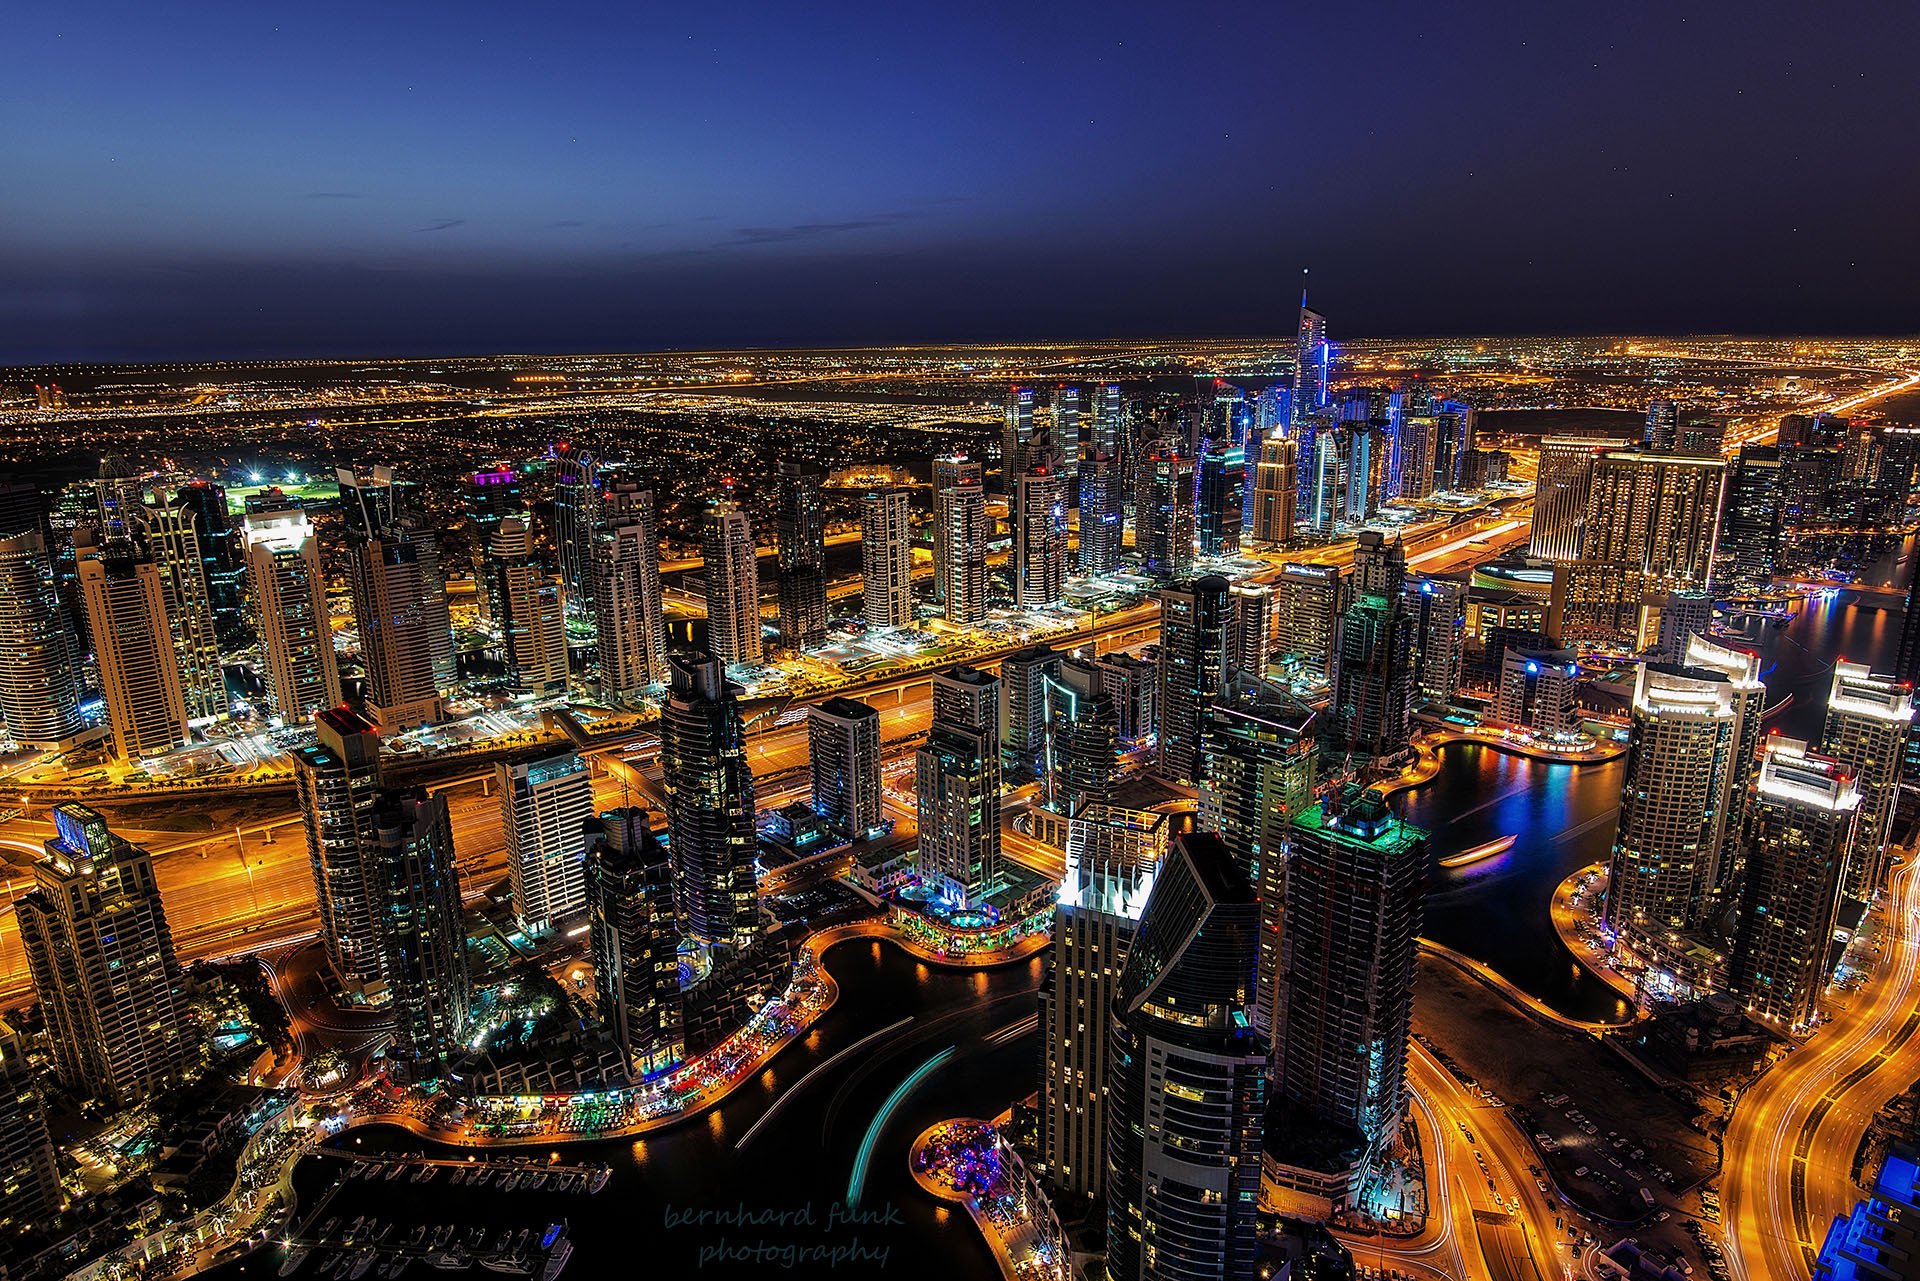 Дубай Марина небоскребы ночью